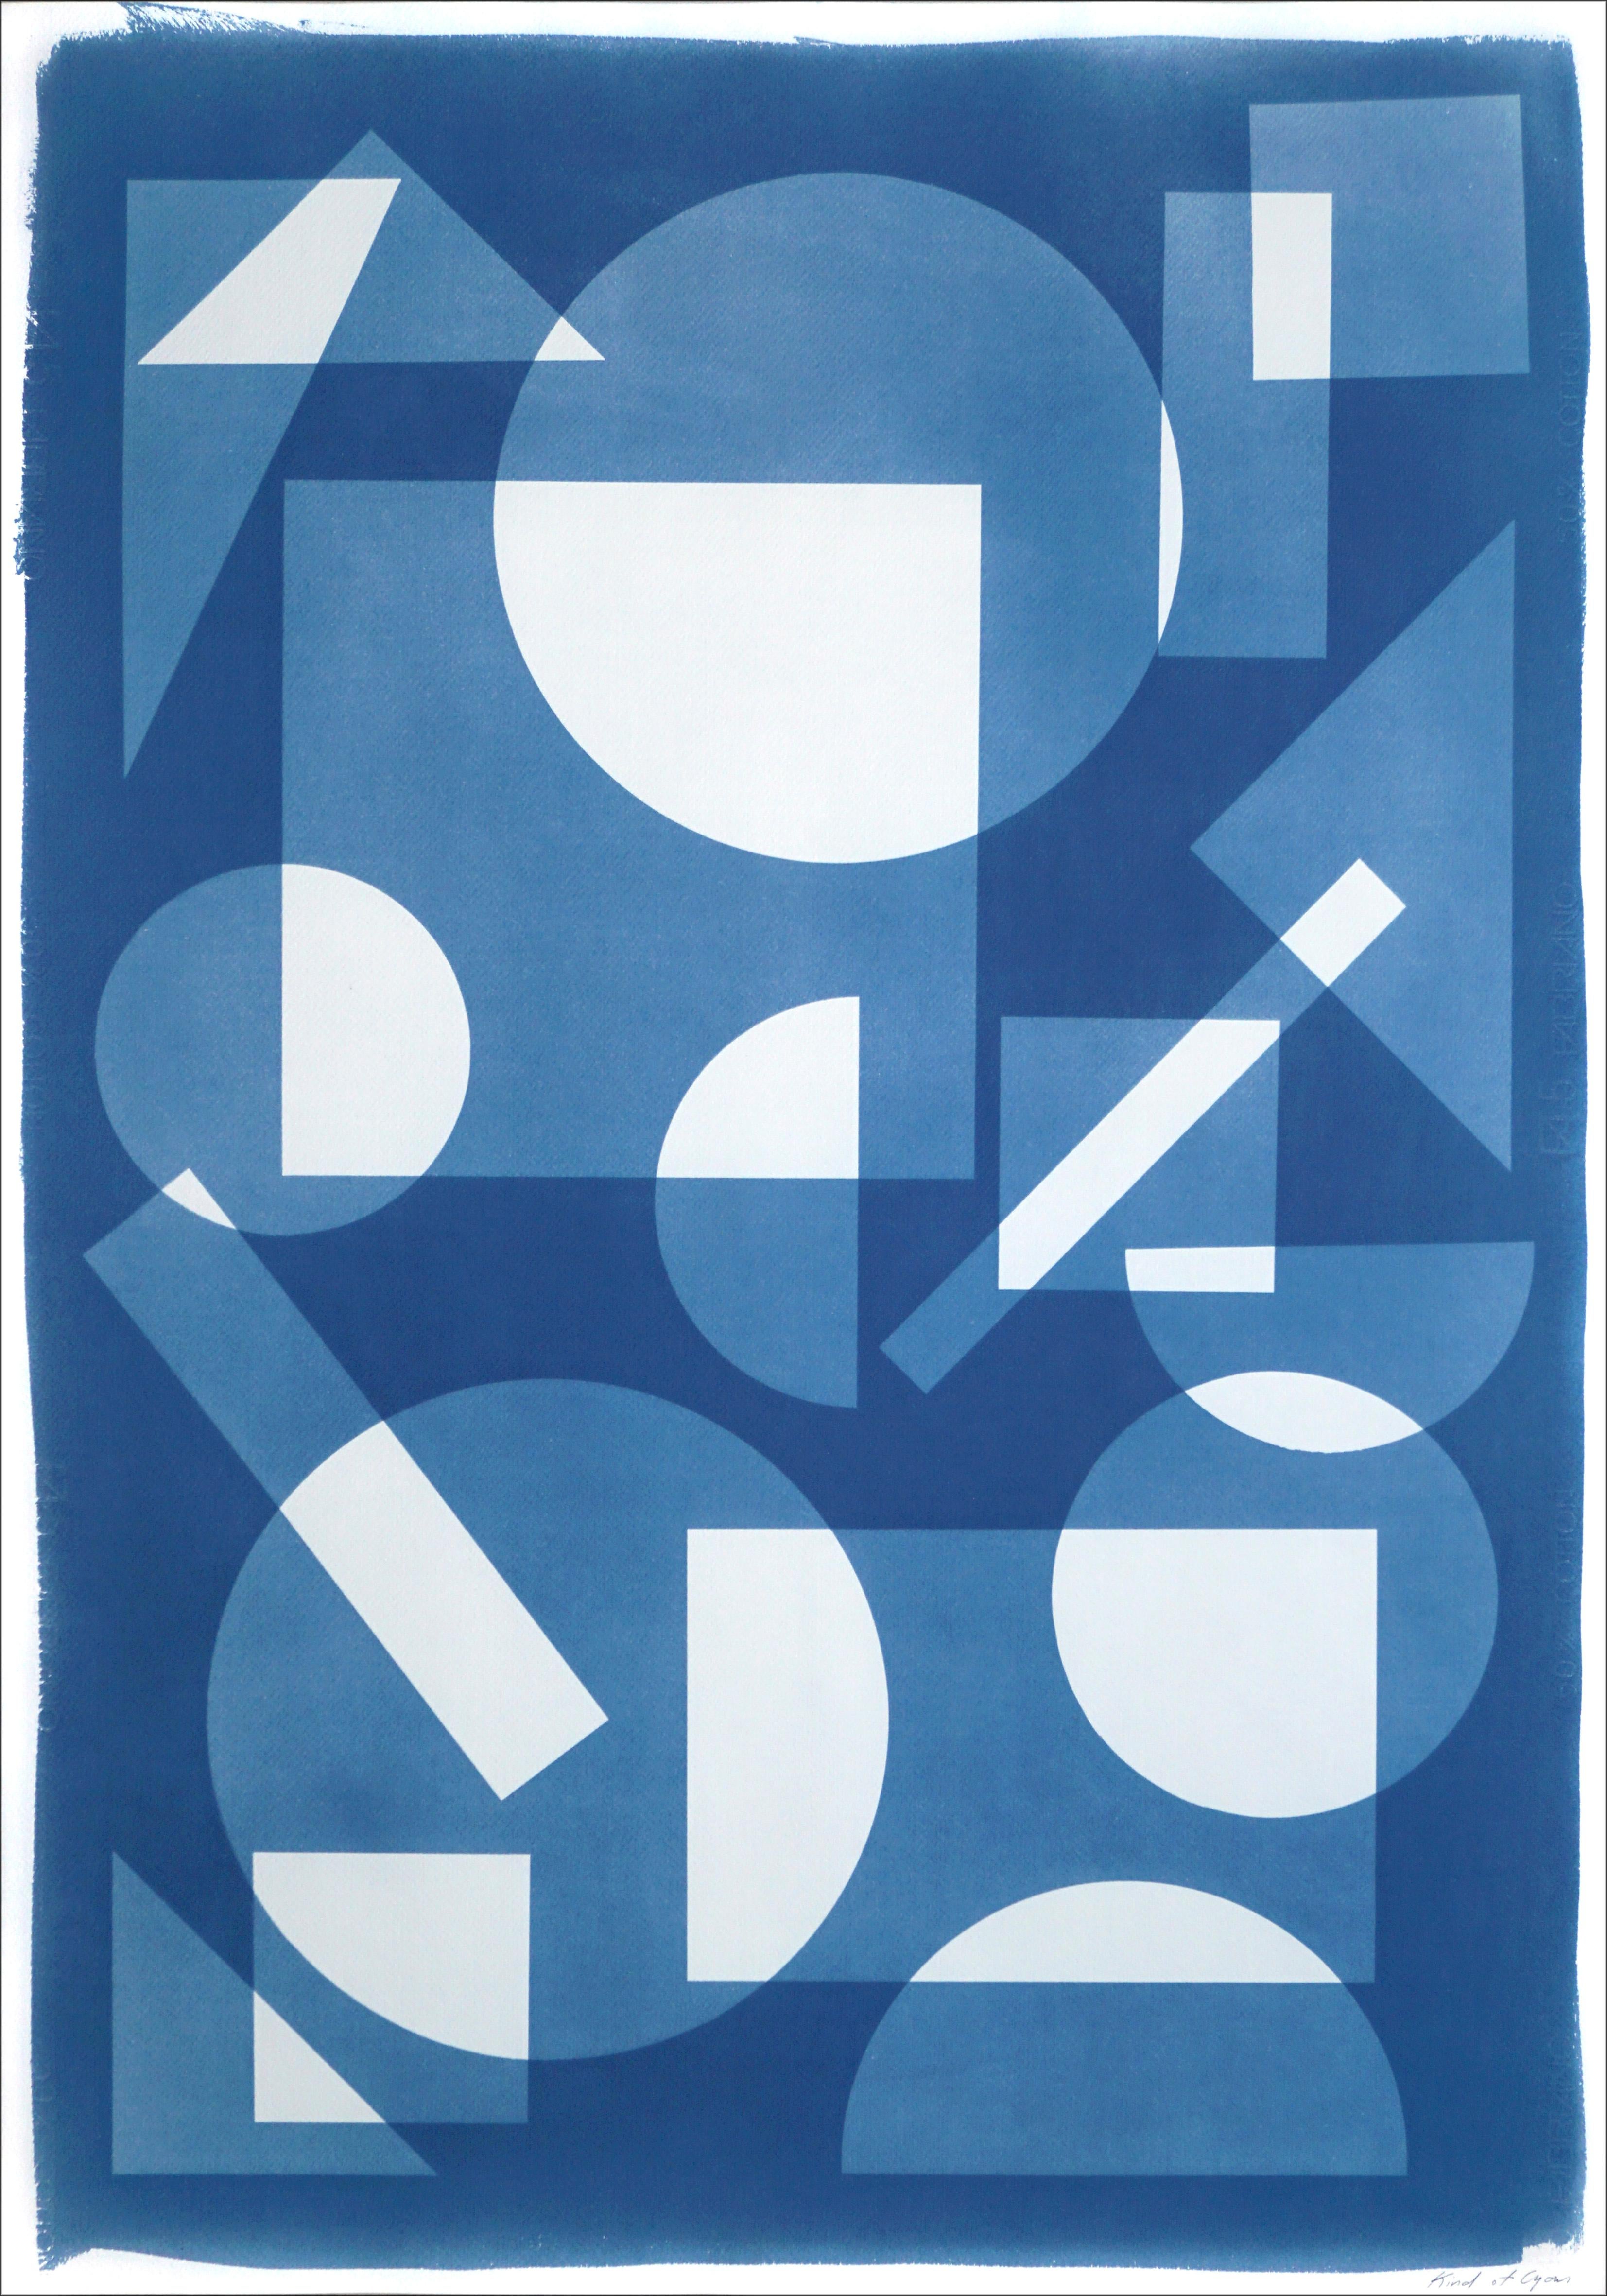 Monotype constructiviste de formes simples flottant dans l'espace, géométrie blanche et bleue